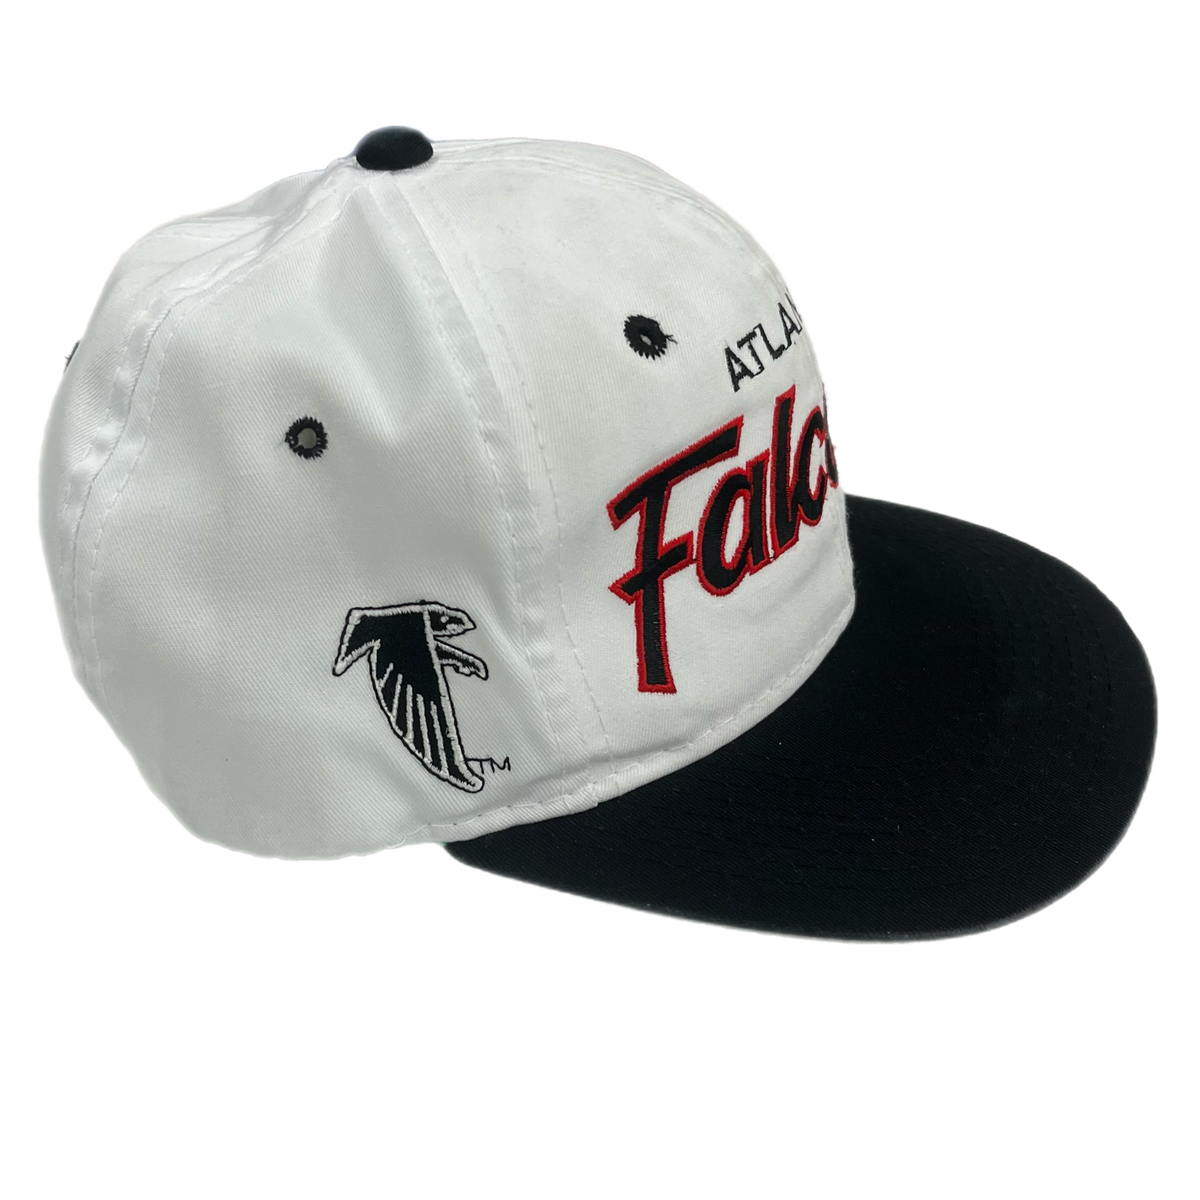 Vintage Atlanta Falcons &quot;Team NFL&quot; Twill Sports Specialties Snapback Hat